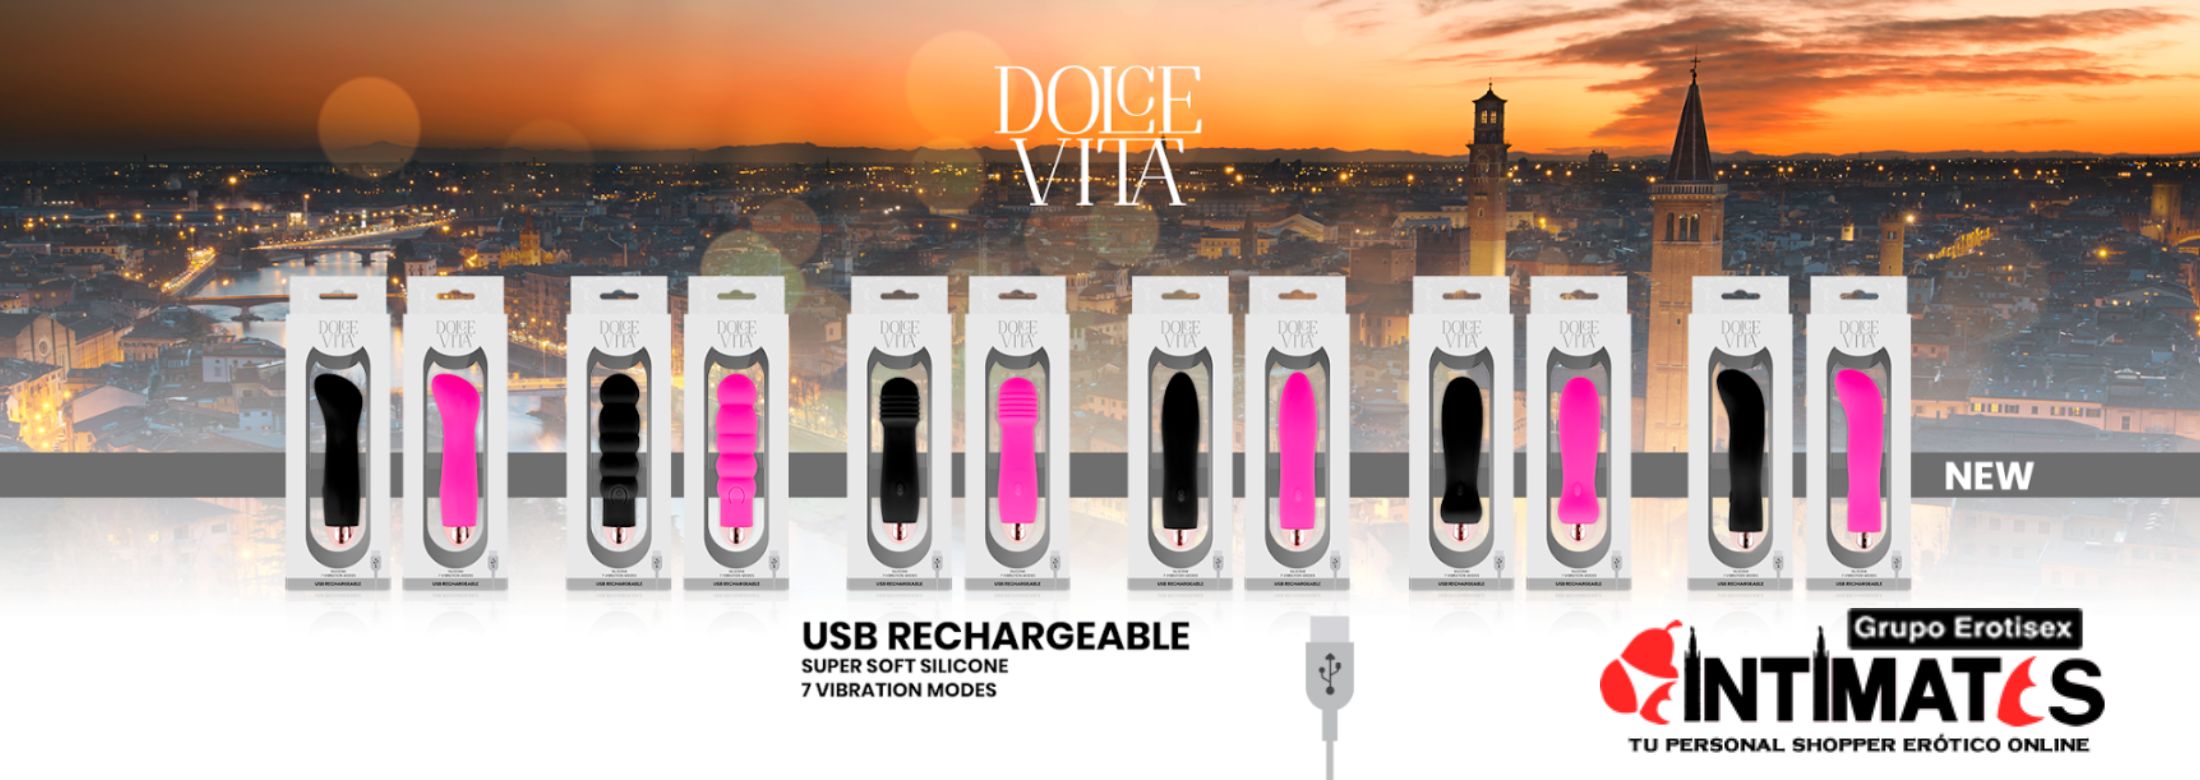 Dolce Vita te ofrece los nuevos vibradores recargables y de silicona suave y sedosa, con toda la calidad de Dolce Vita, que puedes adquirir en intimates.es "Tu Personal Shopper Erótico"